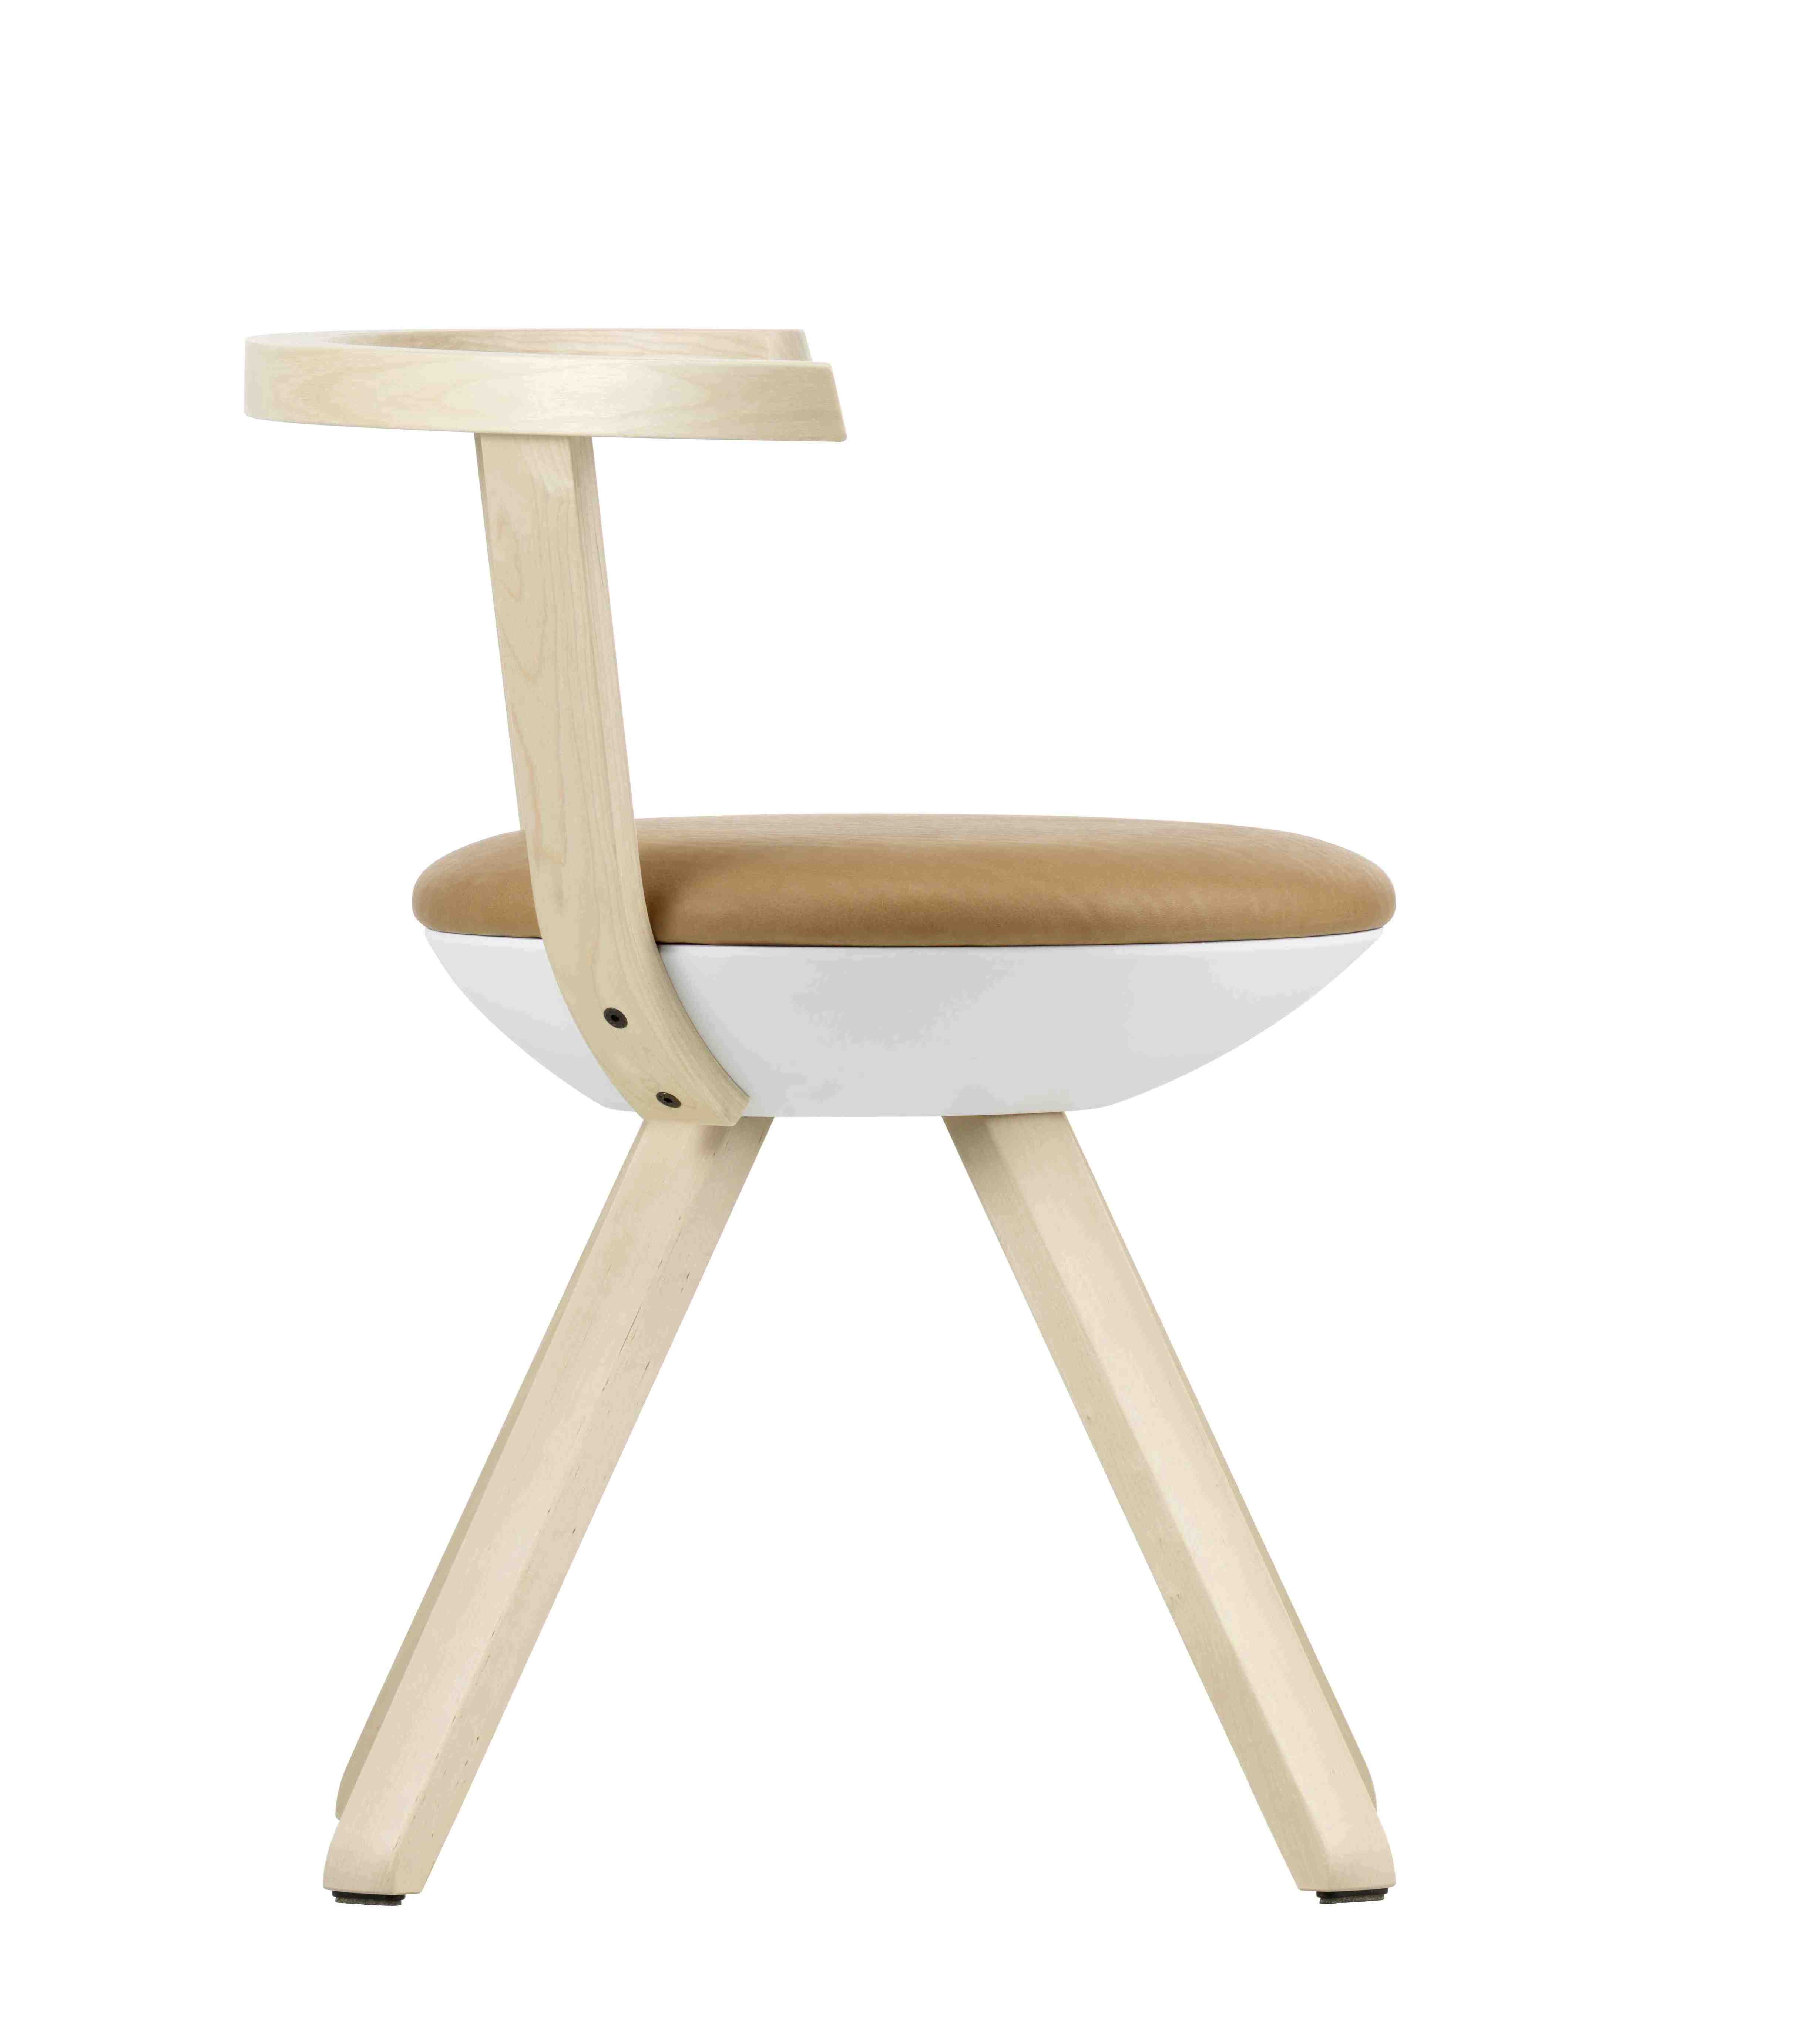 Rival Chair, design di Konstantin Grcic per Artek